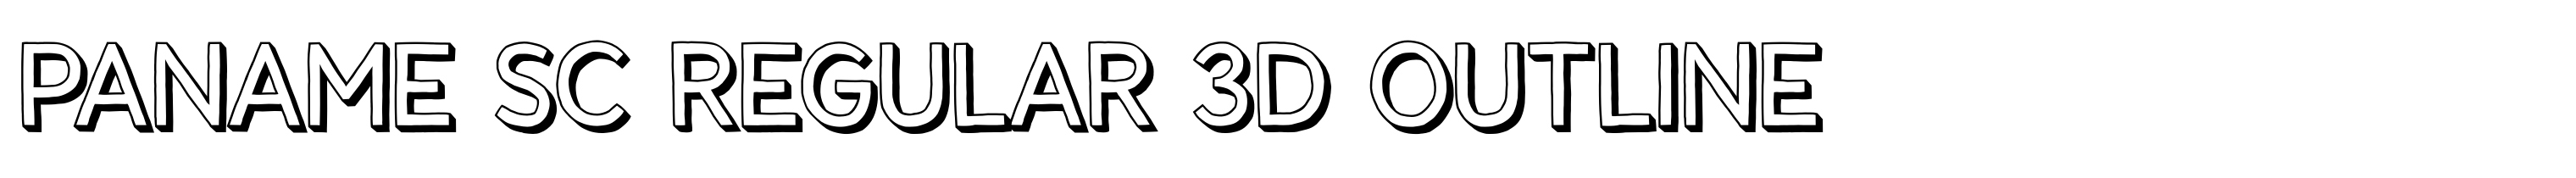 Paname SC Regular 3D Outline